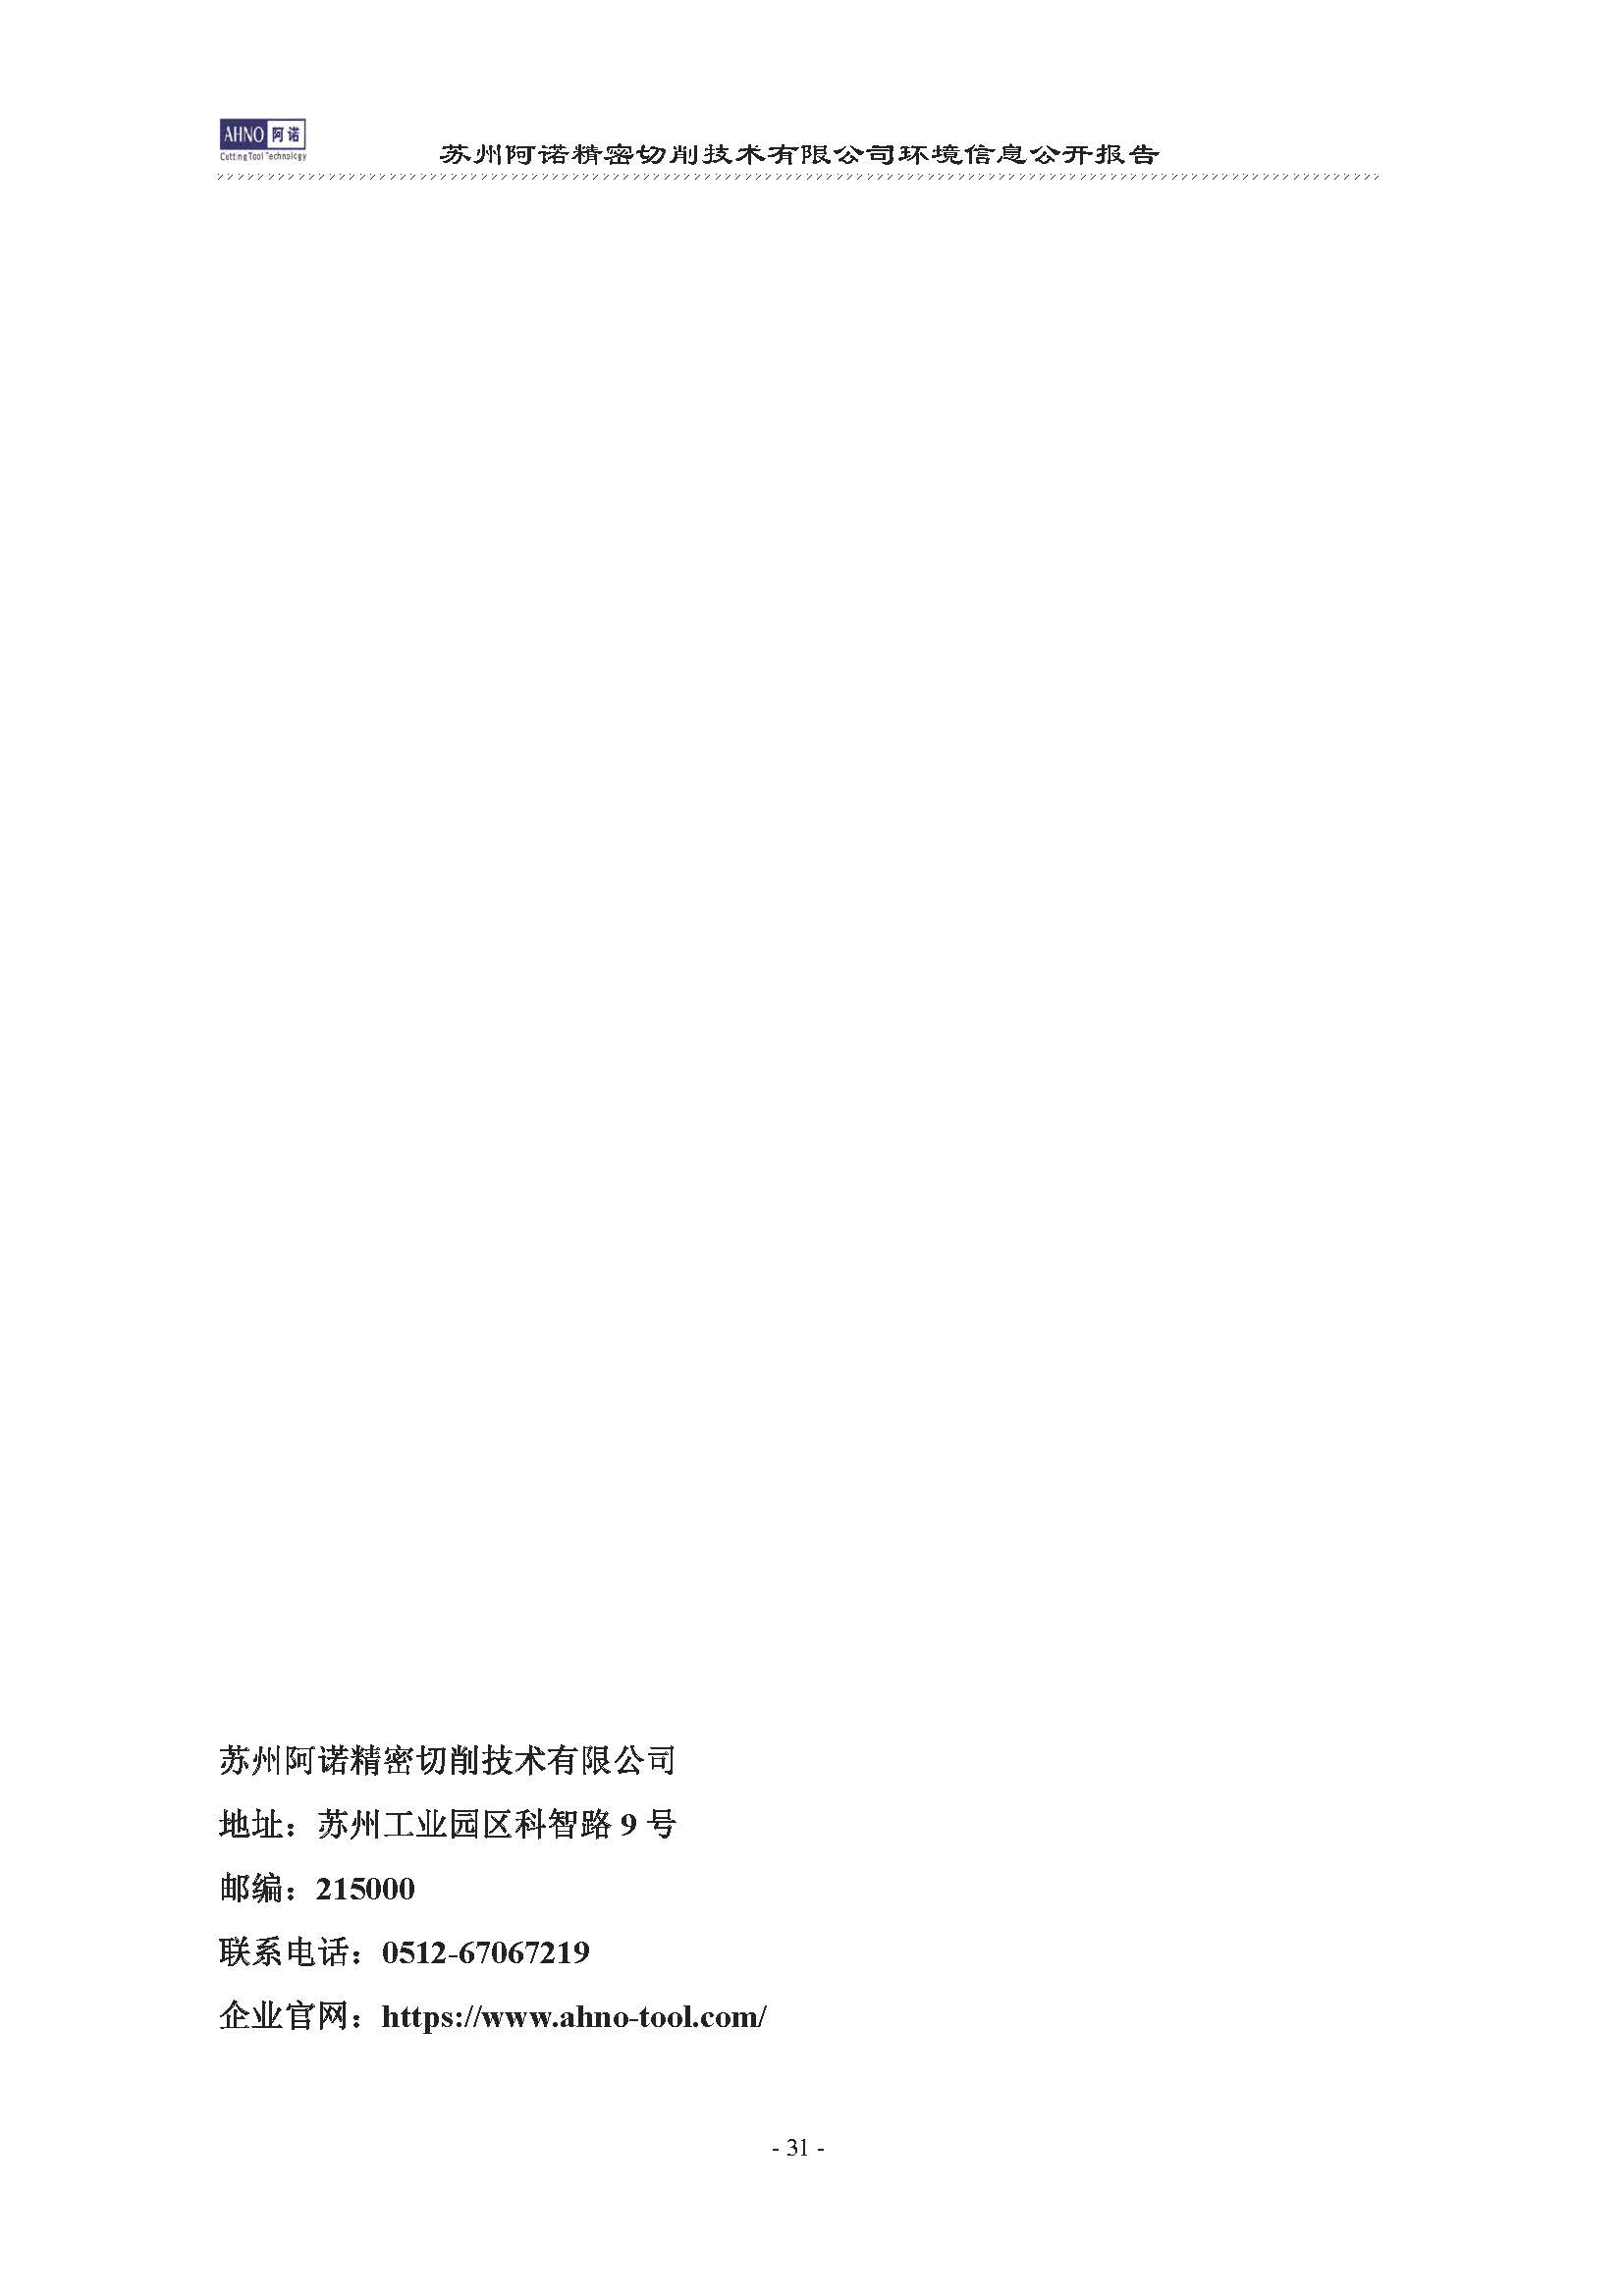 苏州阿诺精密切削技术有限公司2019年度信息公开报告(4)_页面_35